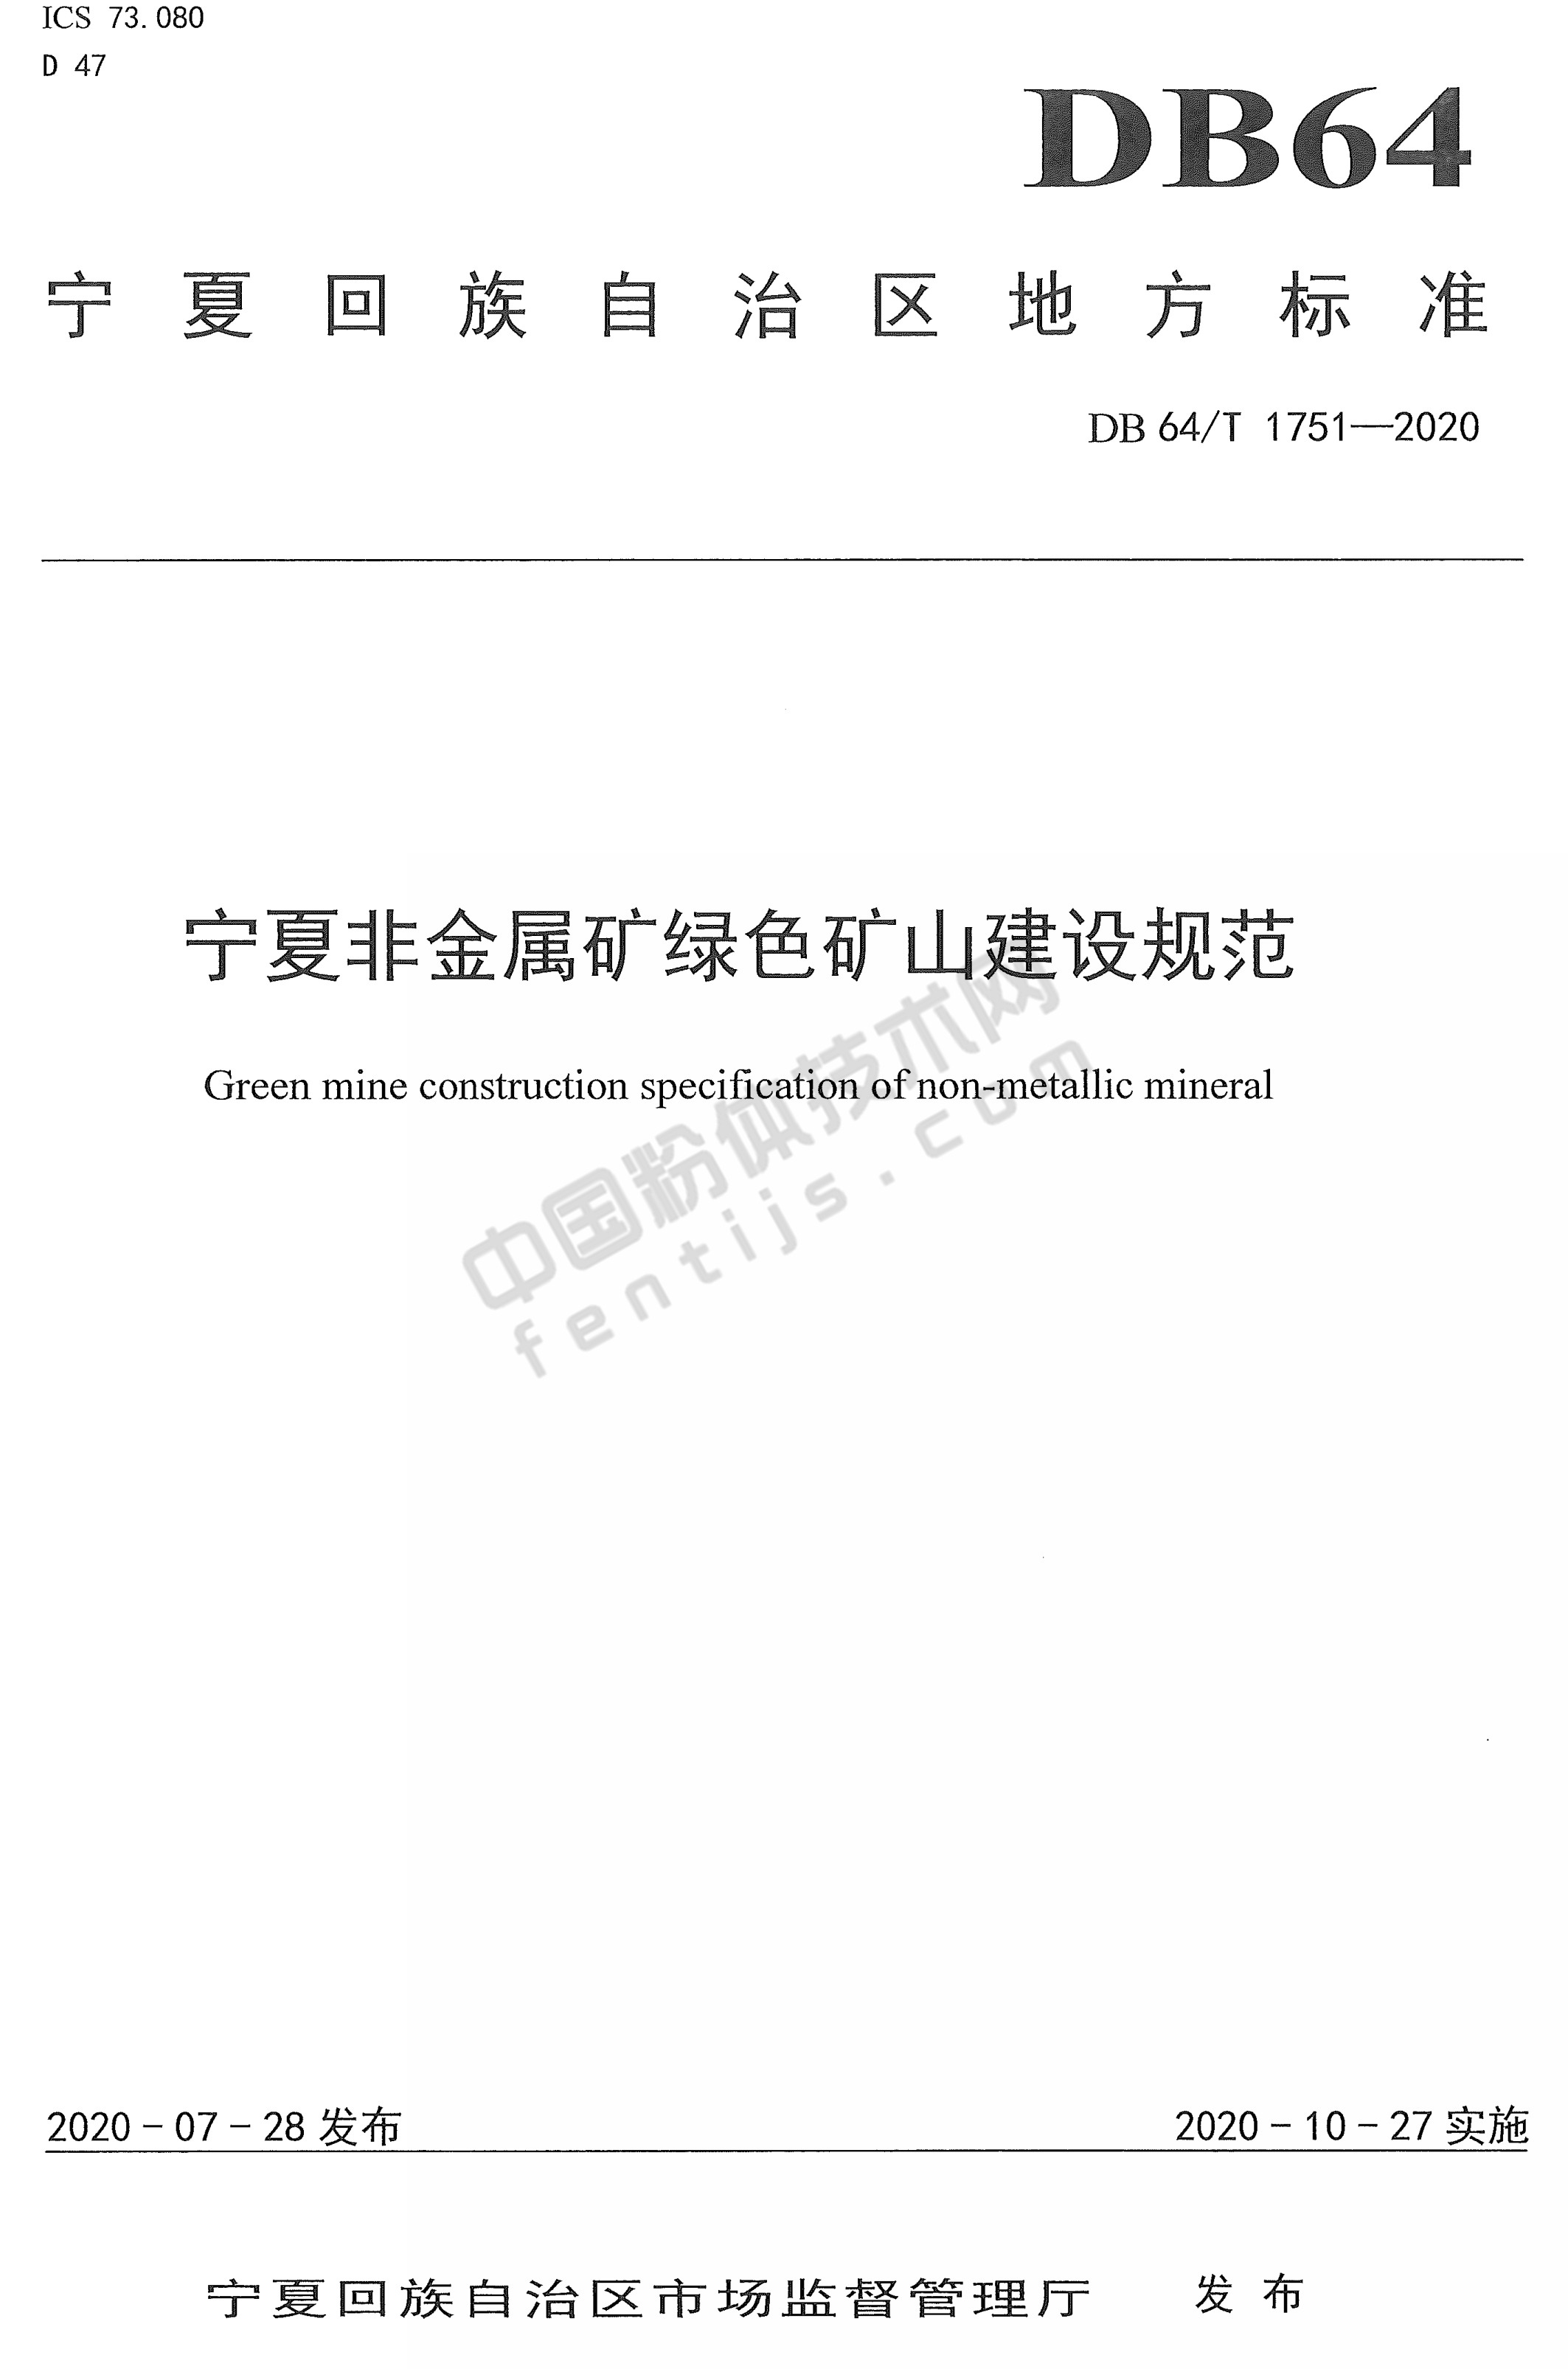 宁夏非金属矿绿色矿山建设规范DB 64/T 1751-2020